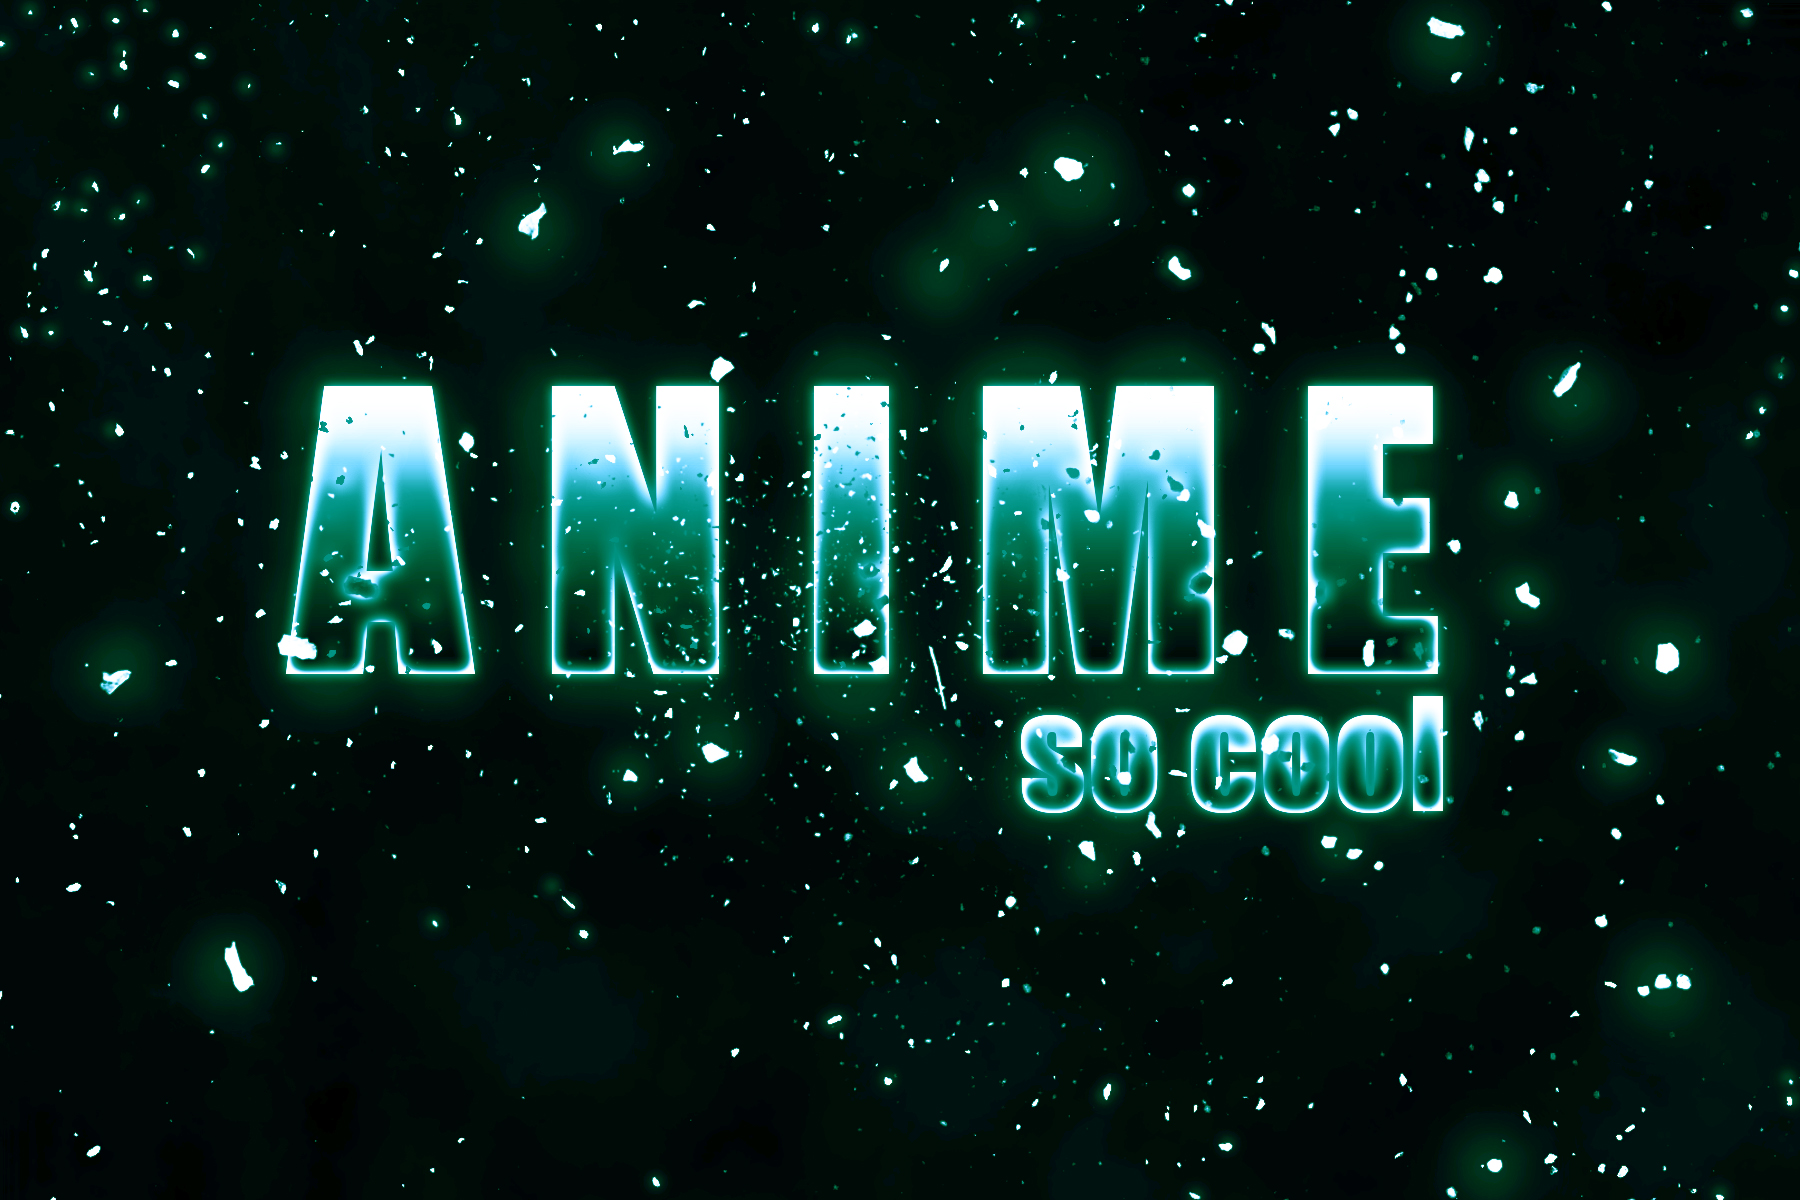 Quý khách đang tìm kiếm một hình ảnh anime logo để cảm nhận thêm sự cuốn hút của nó? Hãy xem ngay hình ảnh liên quan đến từ khóa này để khám phá trọn vẹn bản sắc độc đáo của anime logo.